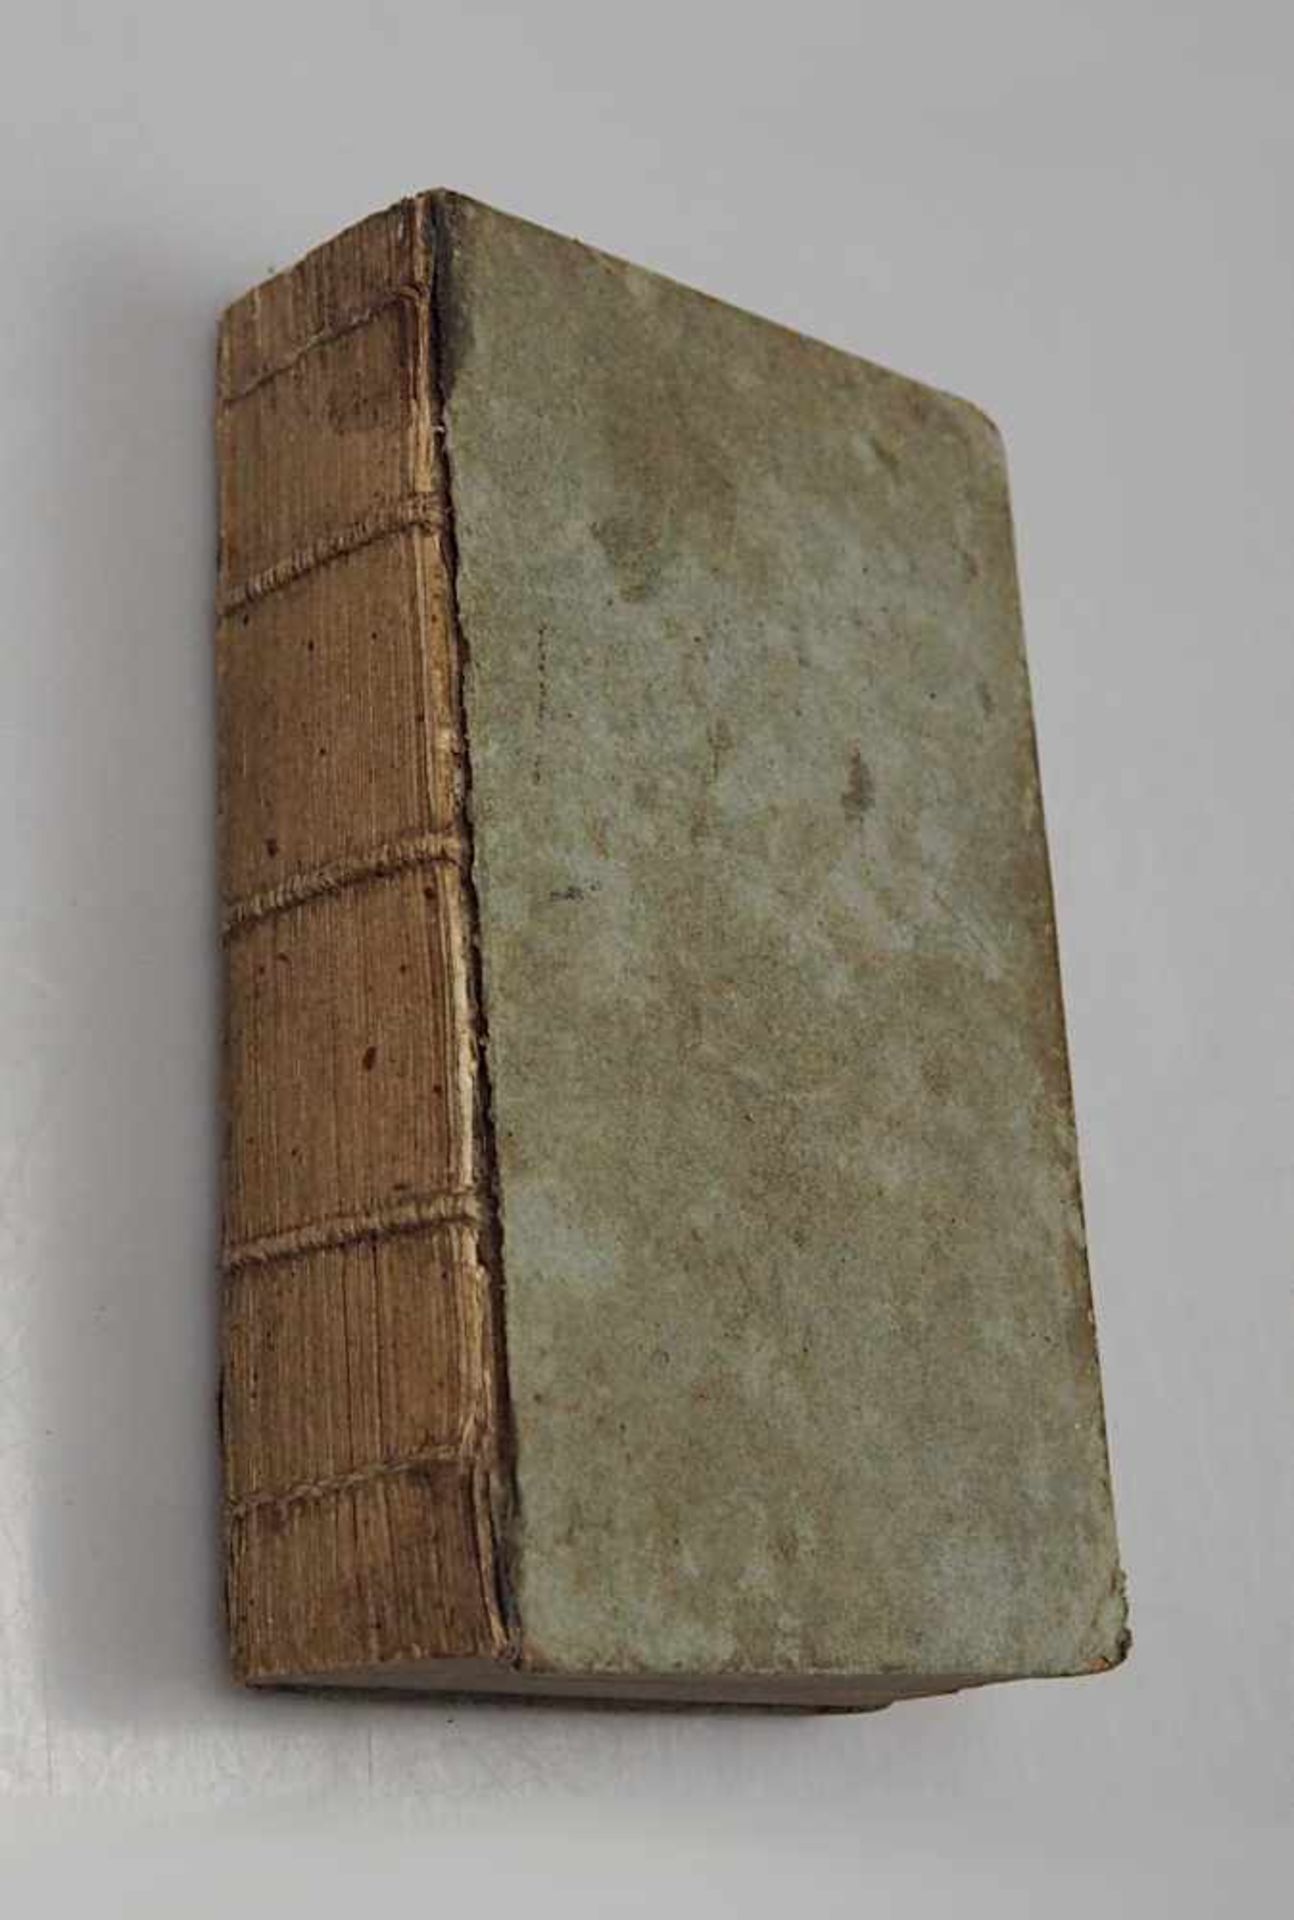 1 Buch "Unterhaltung aus der Naturgeschichte" Augsburg 1797 herausgegeben von der Mark Engelbrech - Bild 3 aus 3